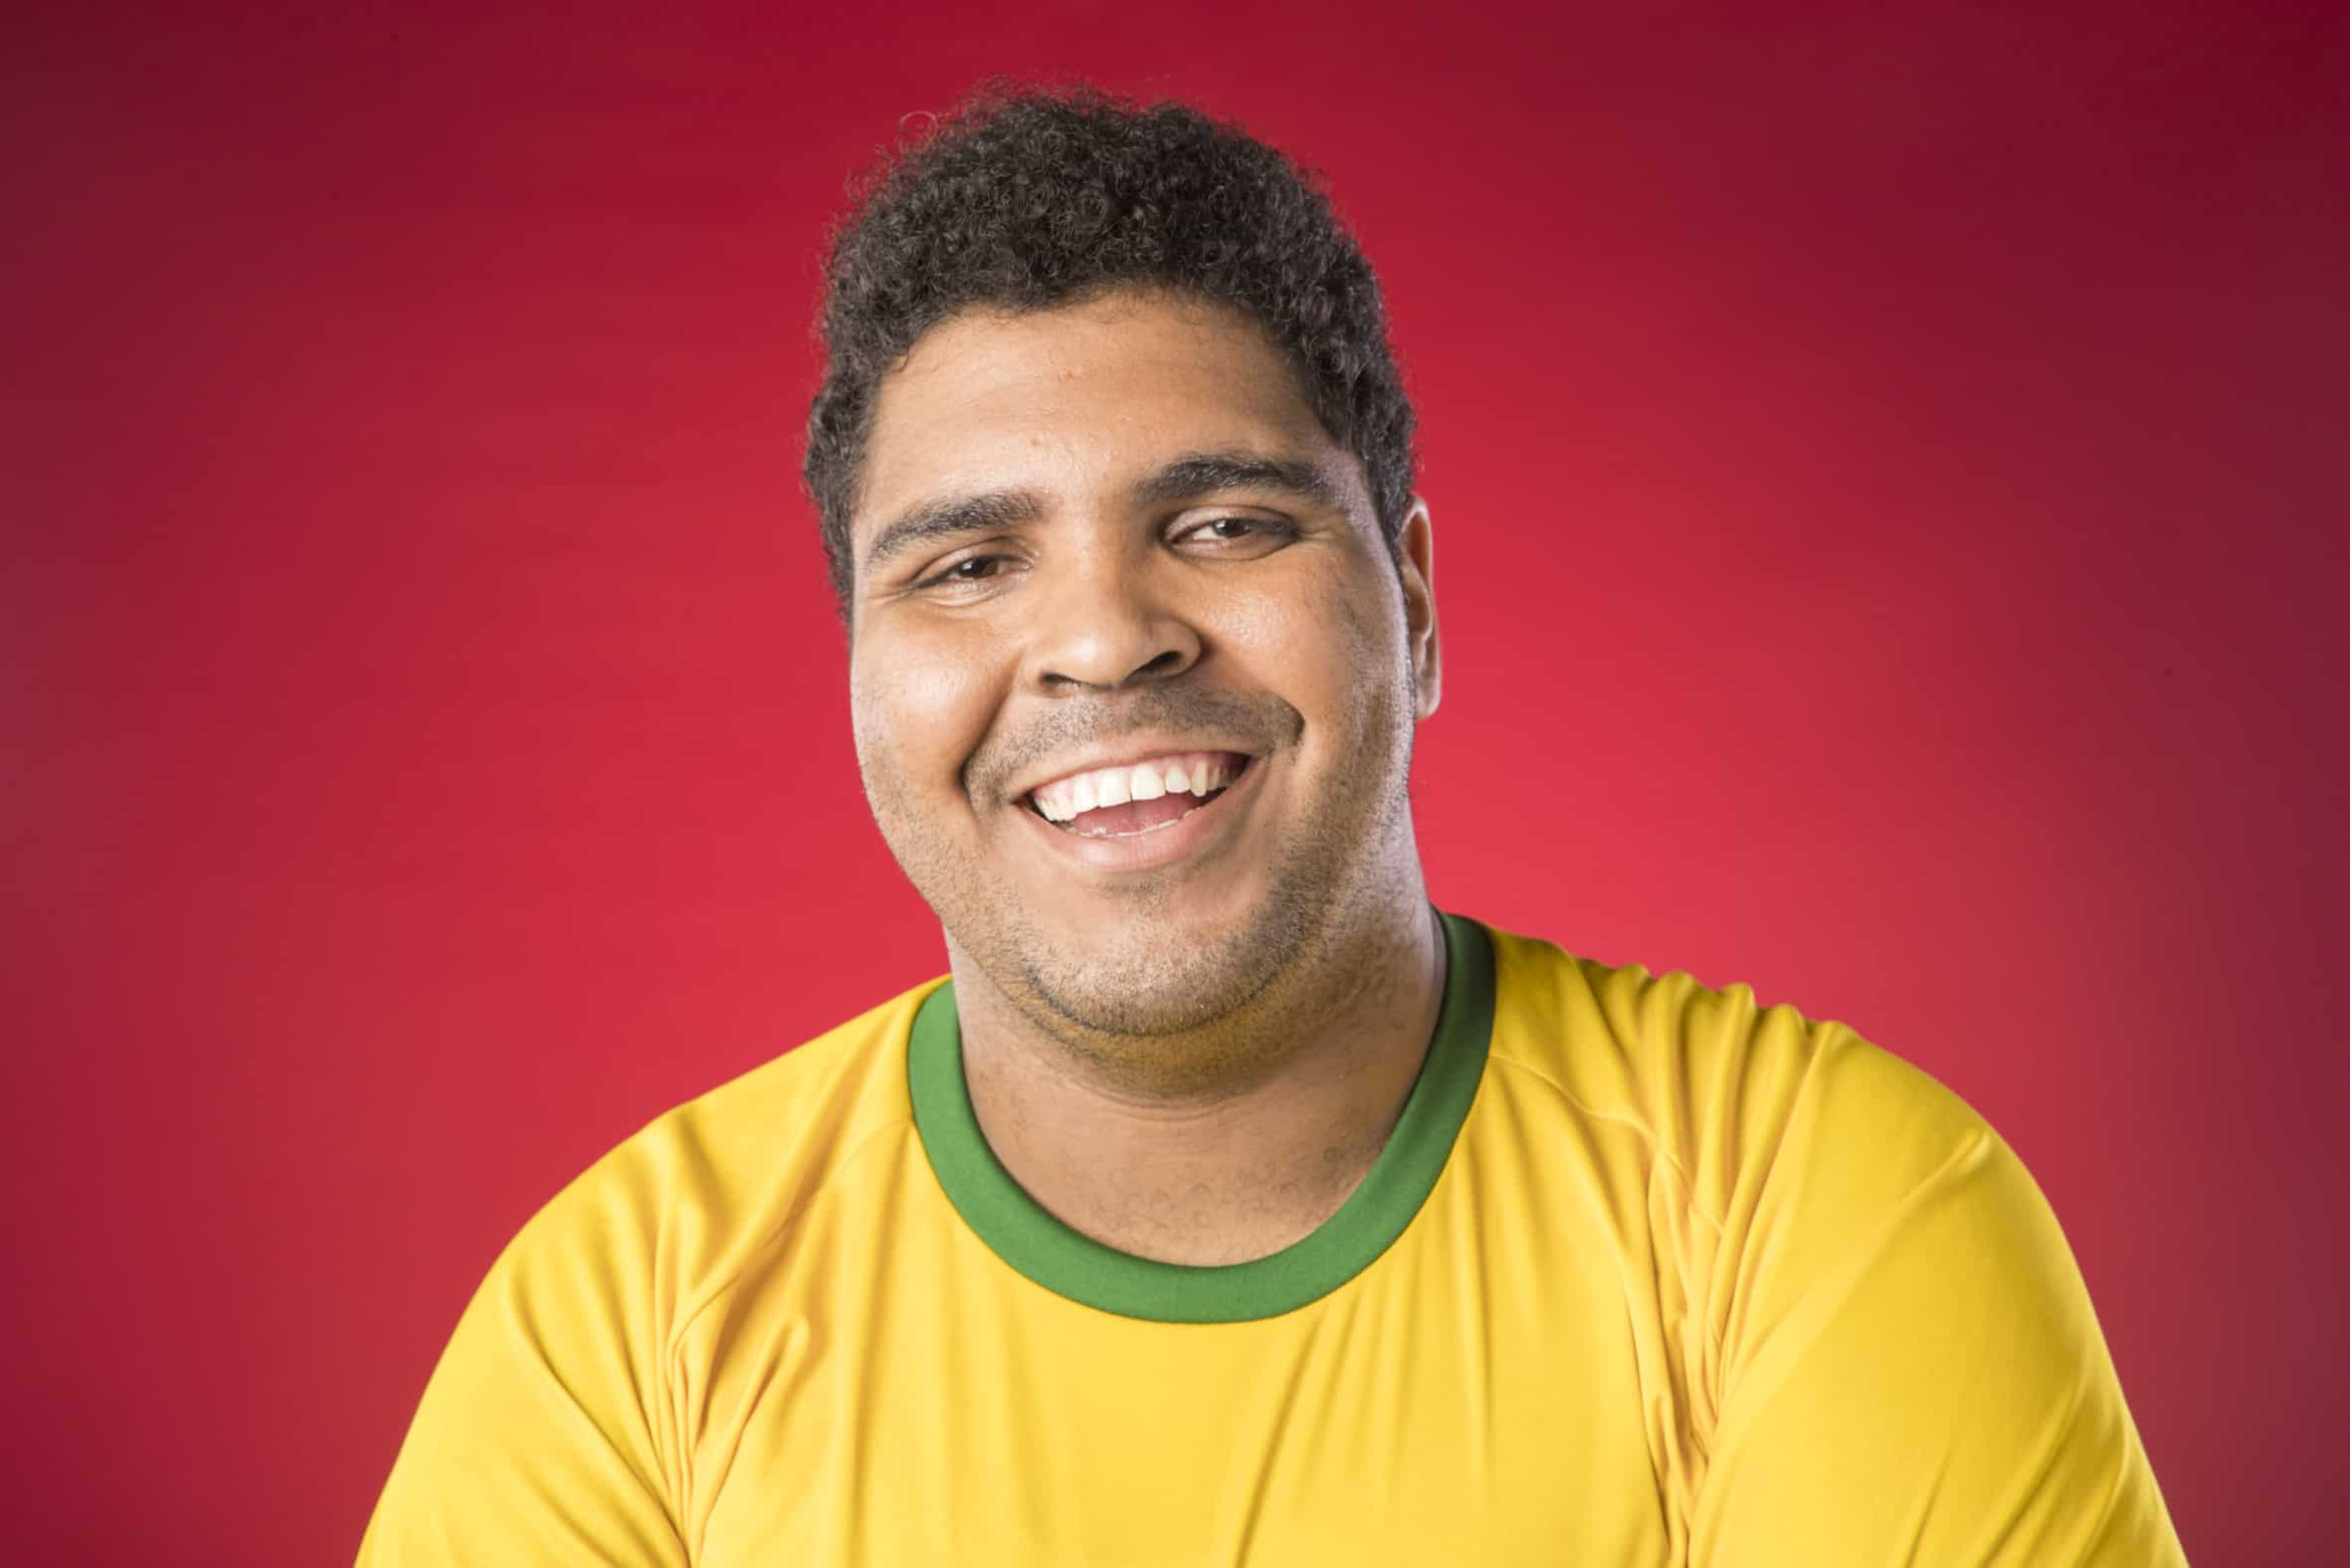 Paulo Vieira confirma fim do Se Joga e admite sonho com programa próprio